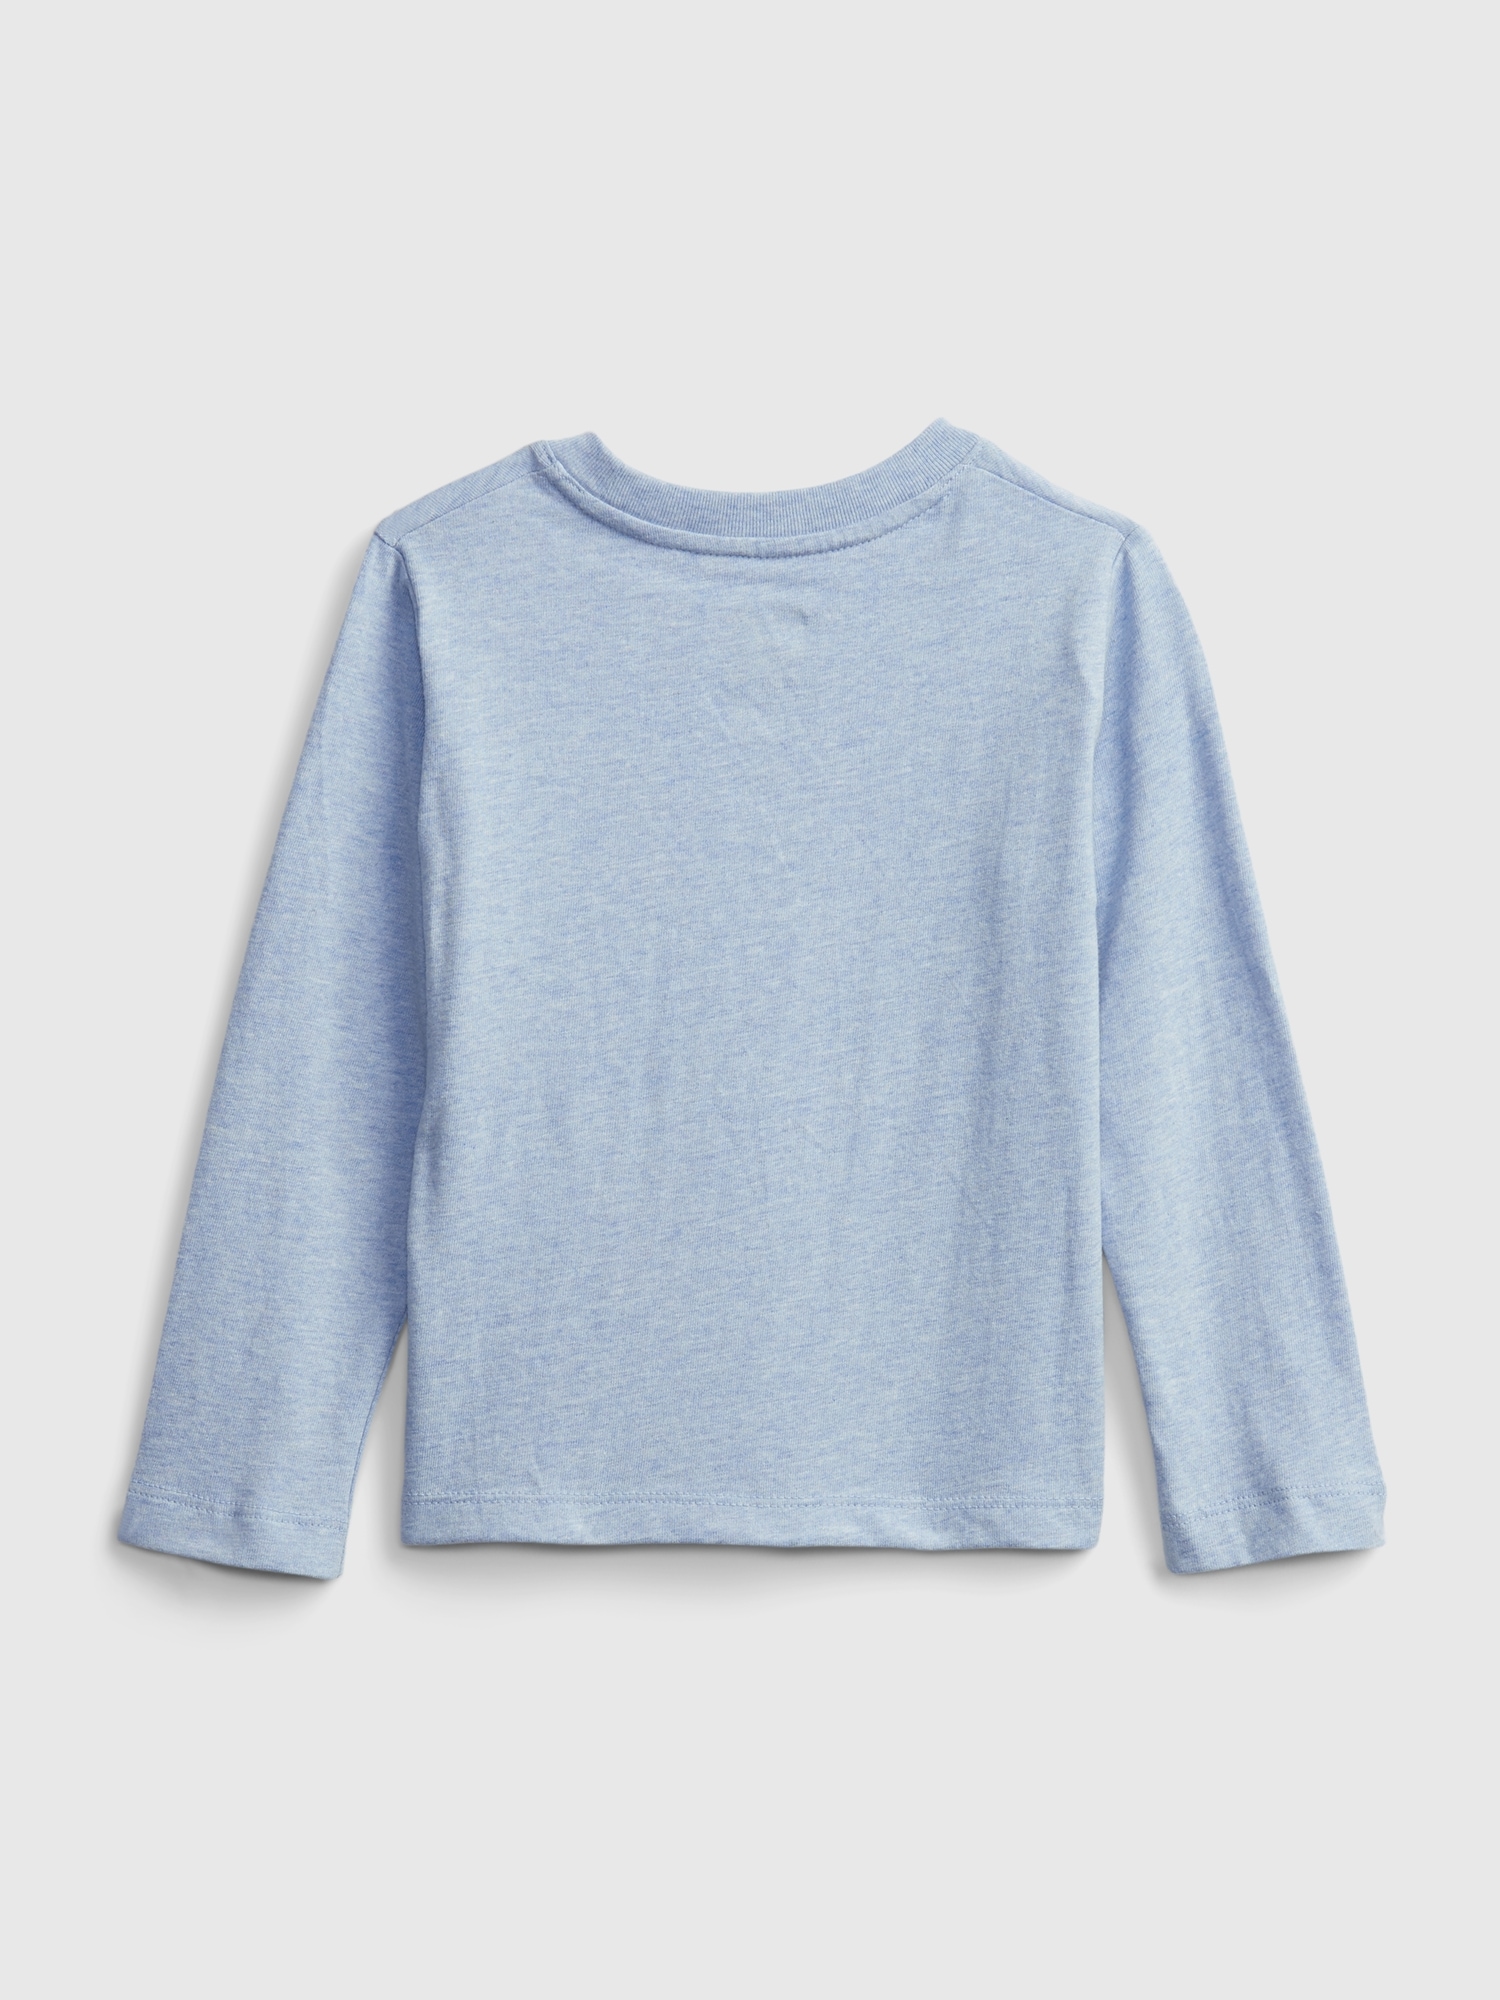 Toddler Mix and Match T-Shirt | Gap